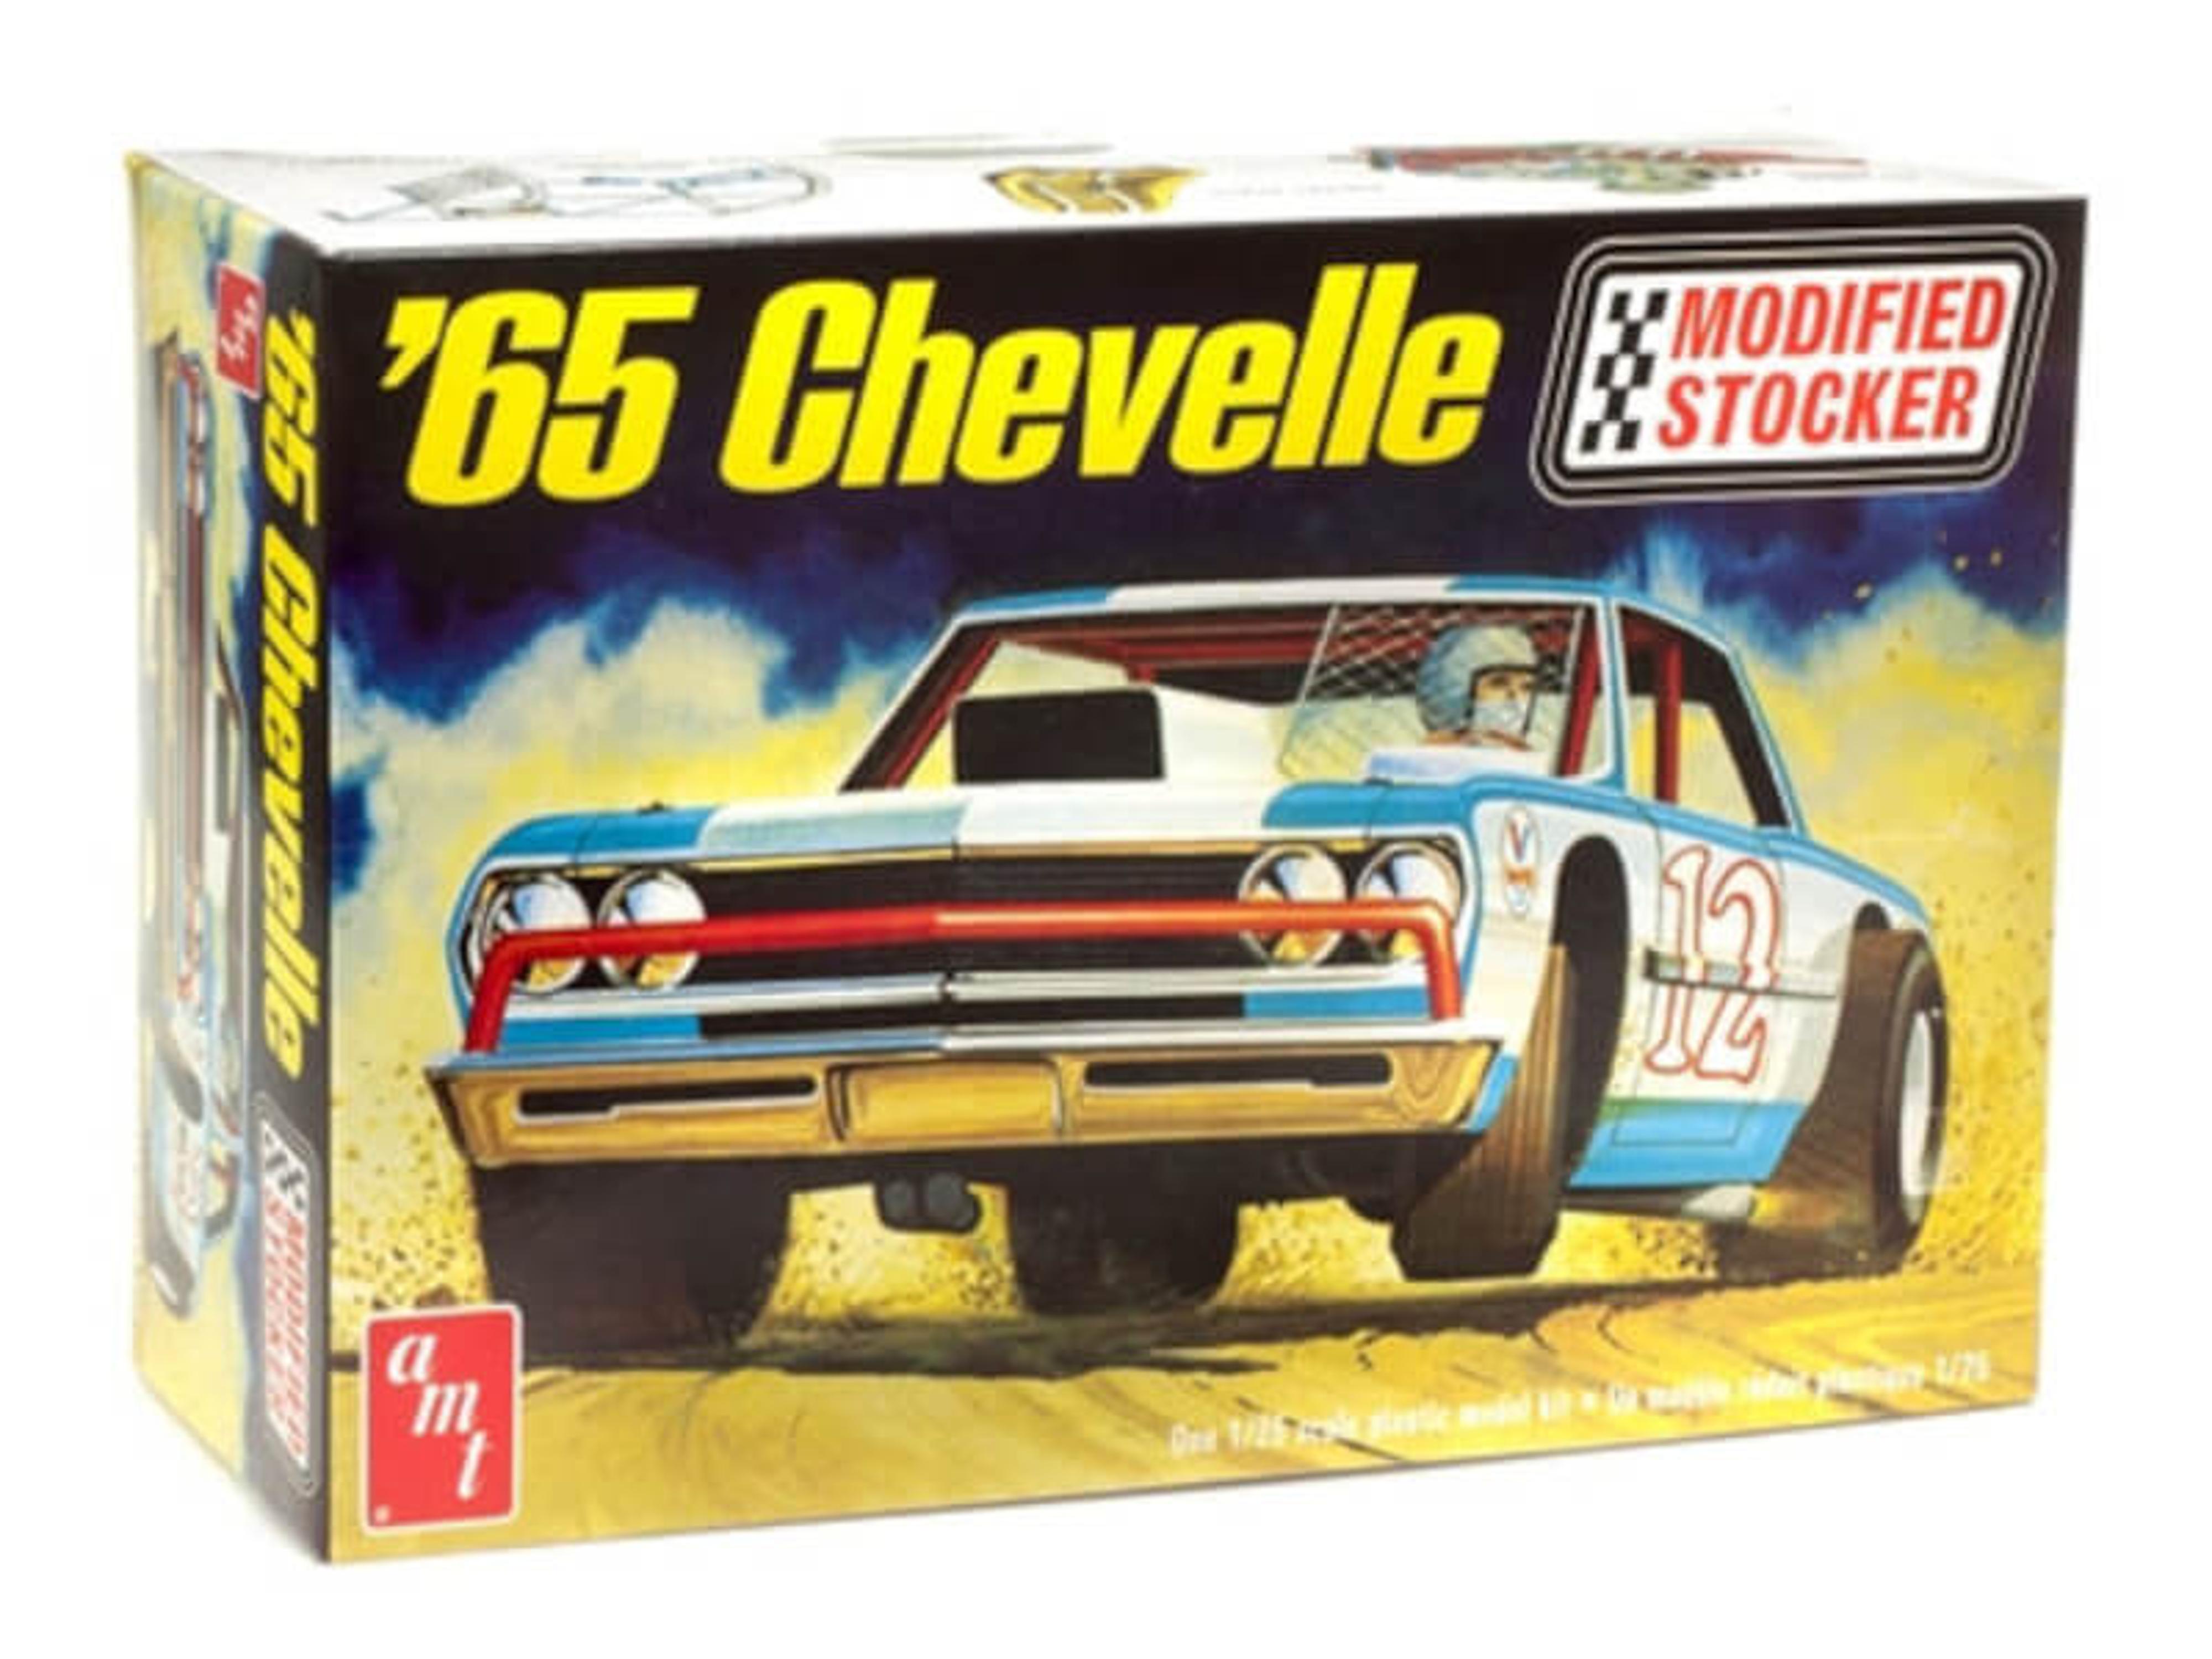 1/25 1965 Chevelle Modified Stocker